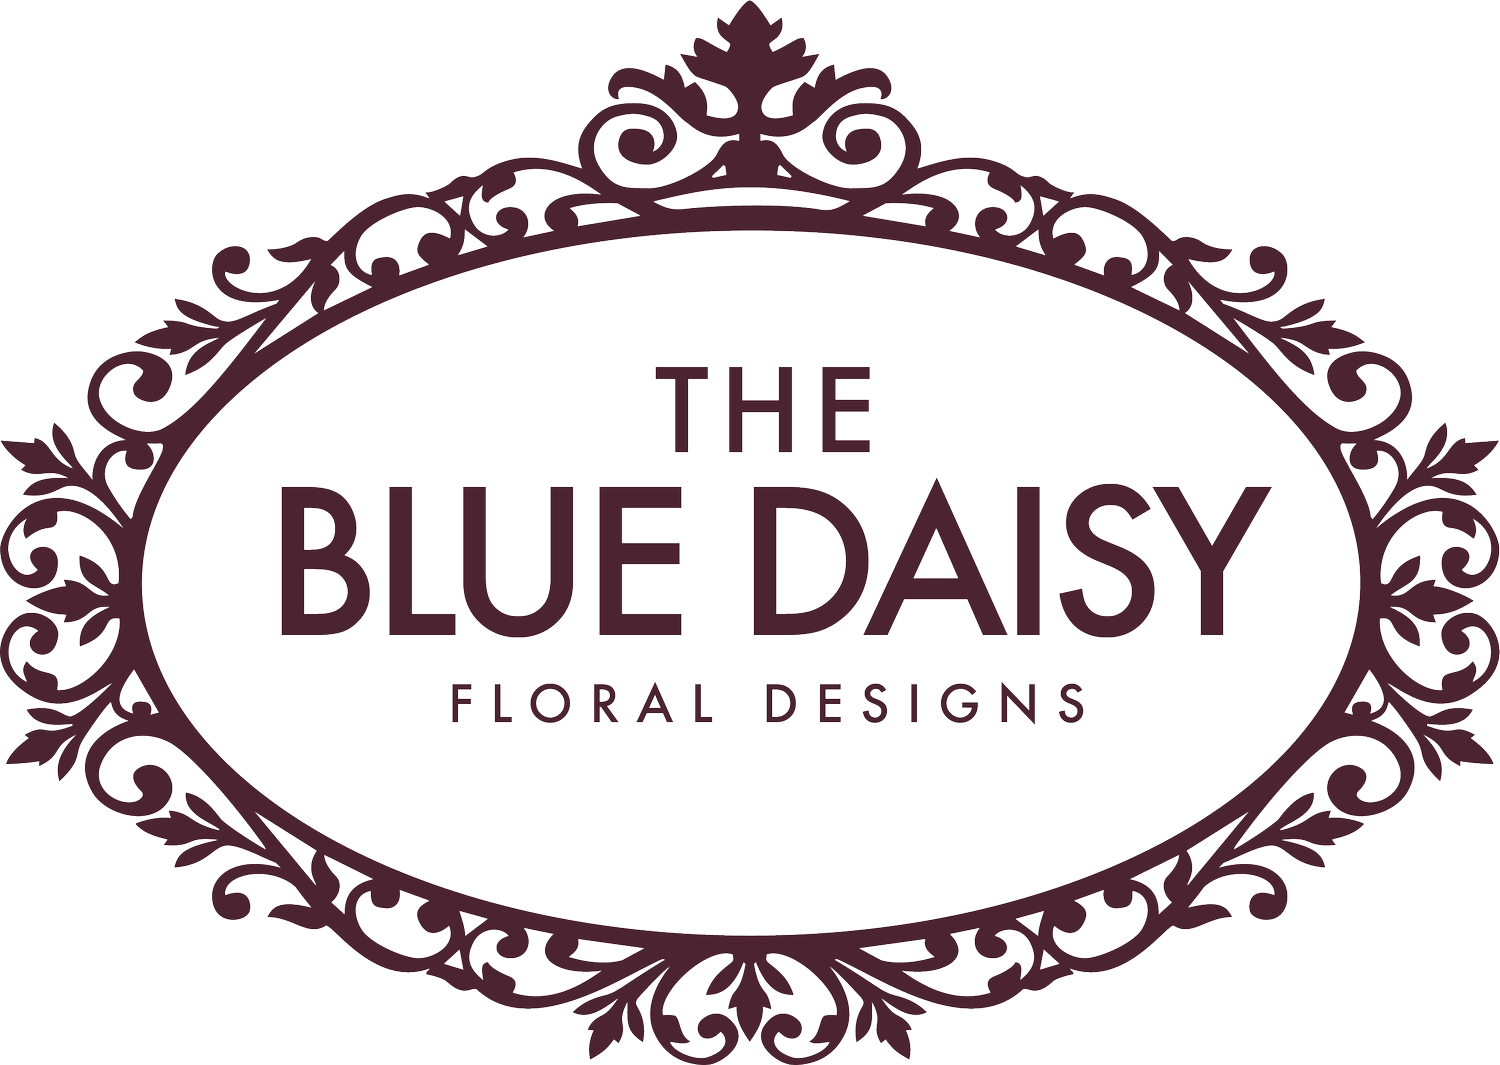 The Blue Daisy